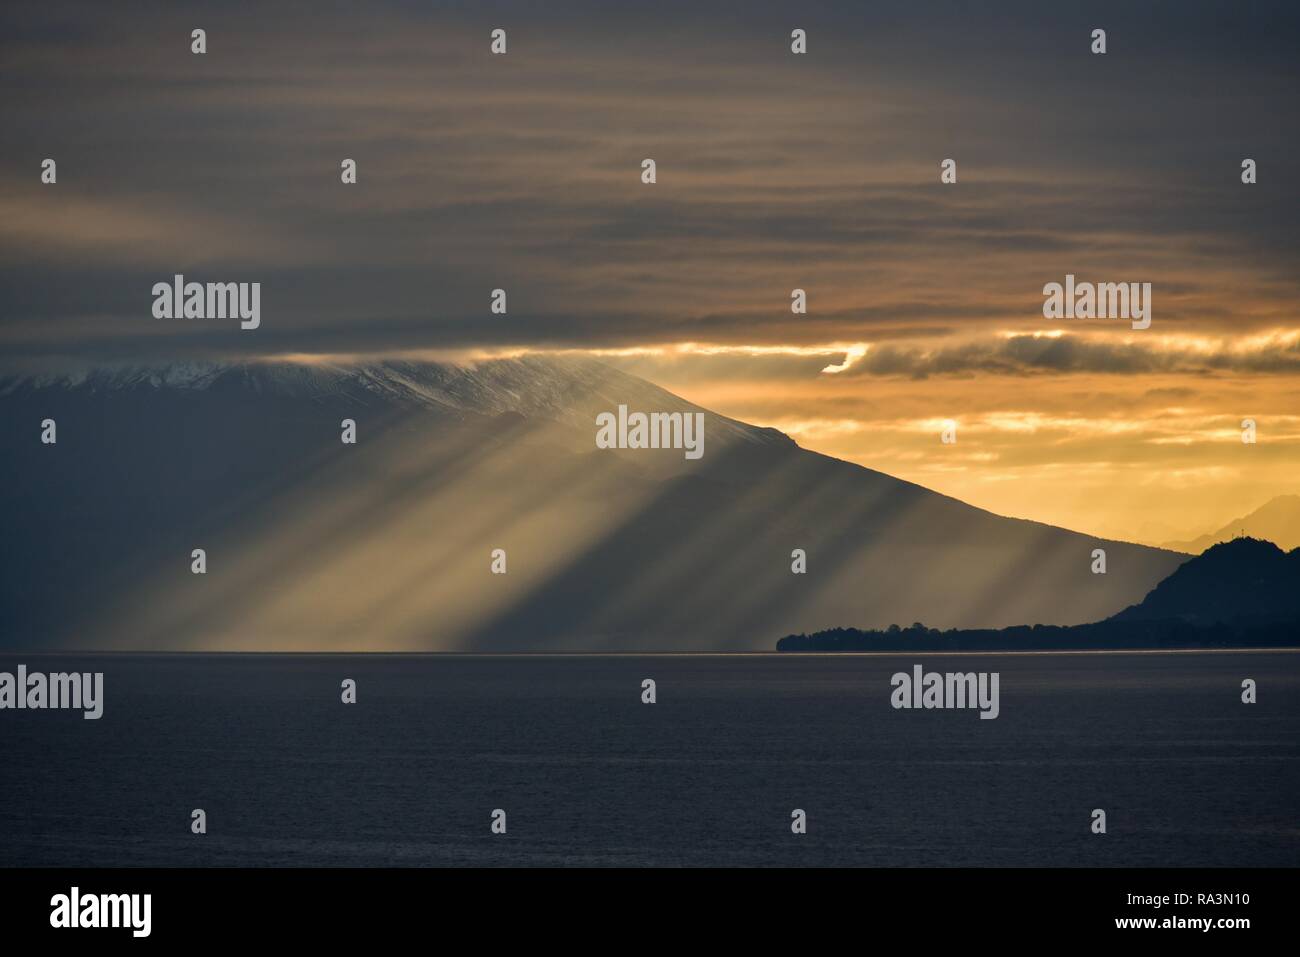 Los rayos del sol brillan a través de oscuro cielo nublado frente al volcán Osorno en el Lago Llanquihue, amanecer, Puerto Varas, Carretera Austral Foto de stock